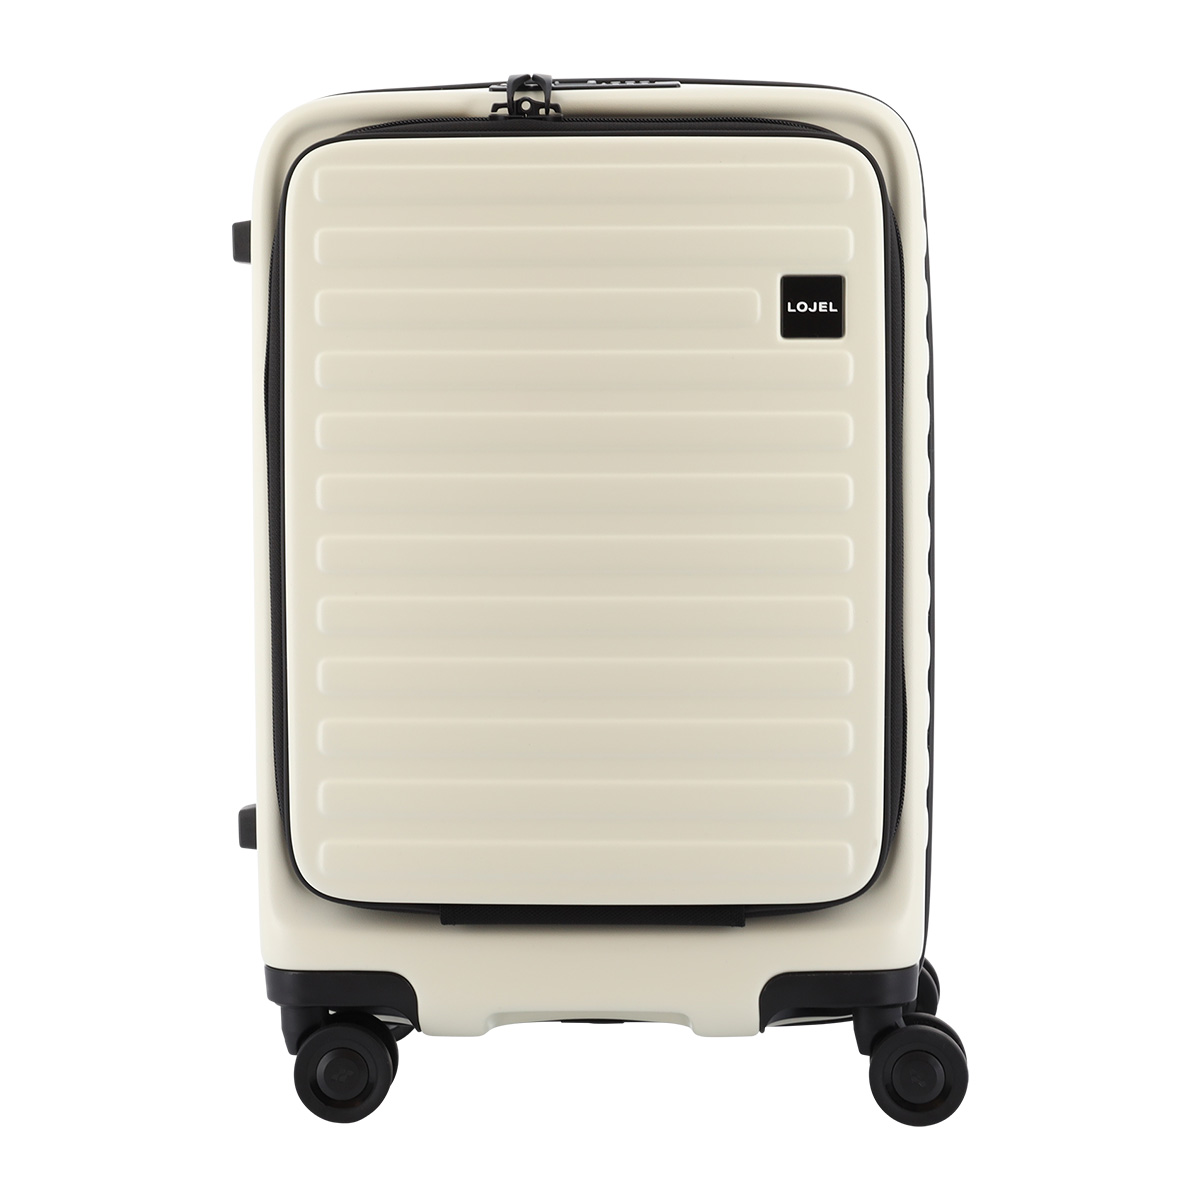 ロジェール スーツケース キューボ 機内持ち込み 37(42)L 48cm 3.4kg CUBO-REFRESH-S LOJEL キャリーケース  キャリーバッグ フロントオープン 拡張機能